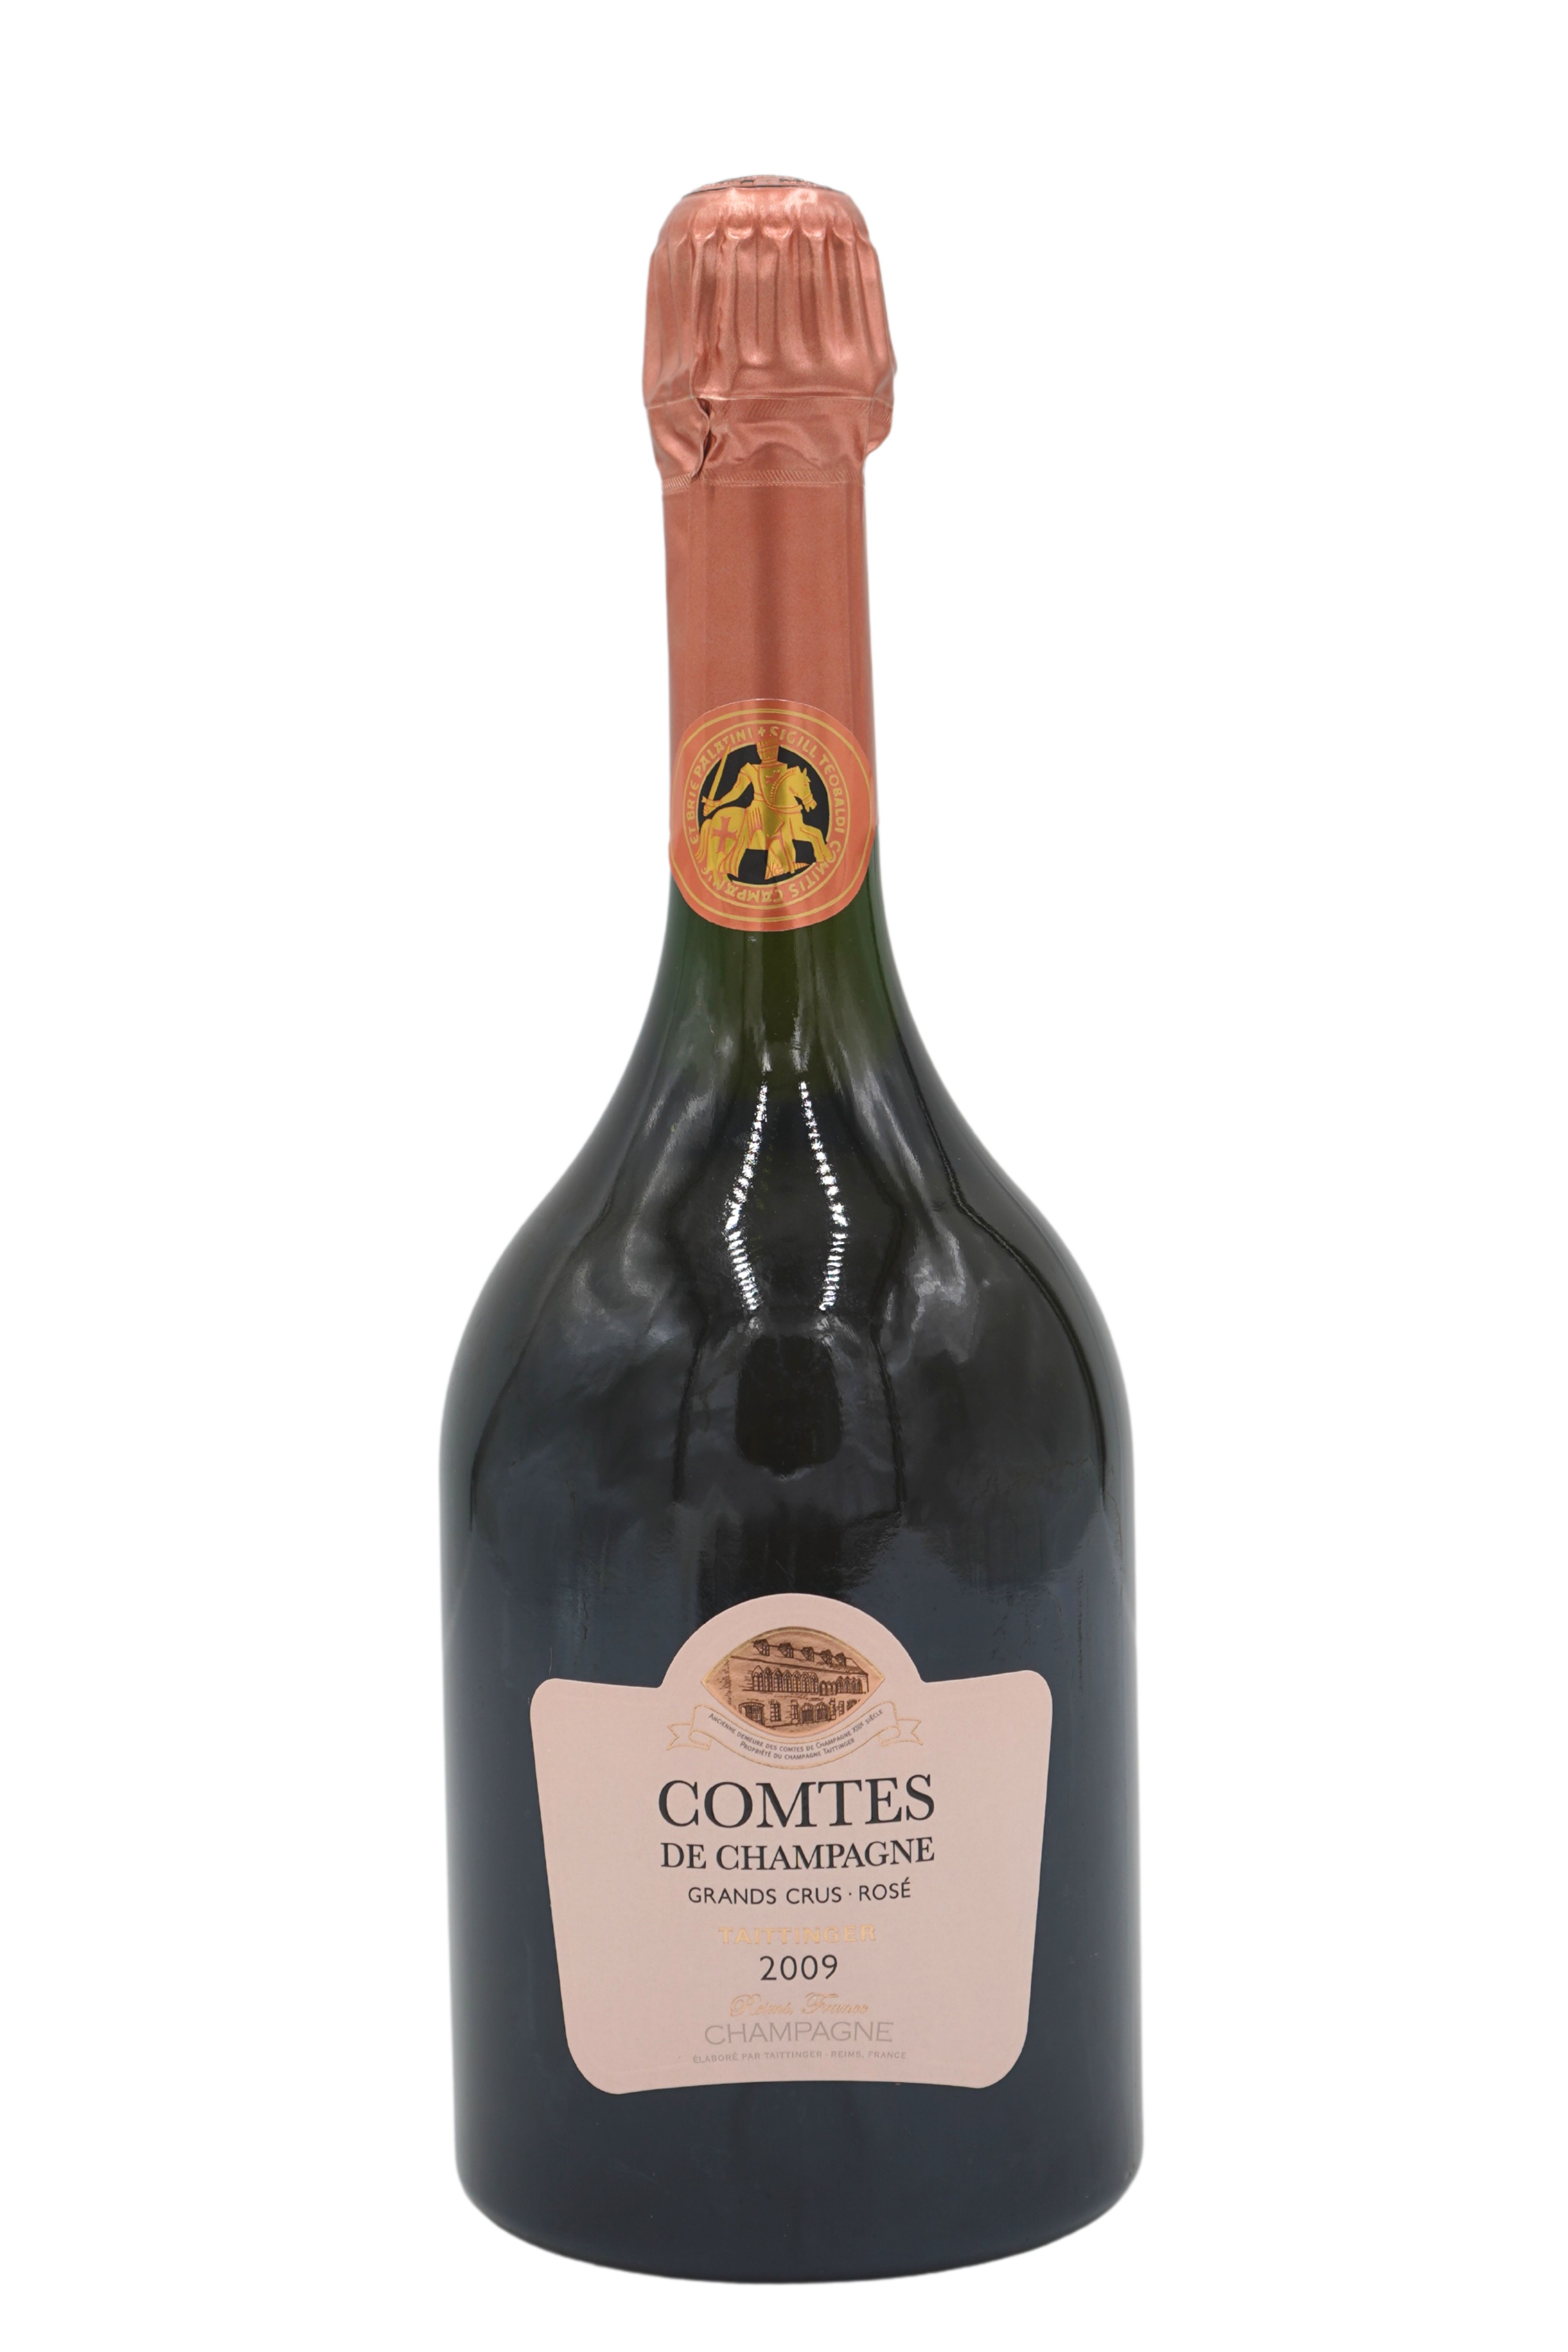 2009 Comtes de Champagne Rosé